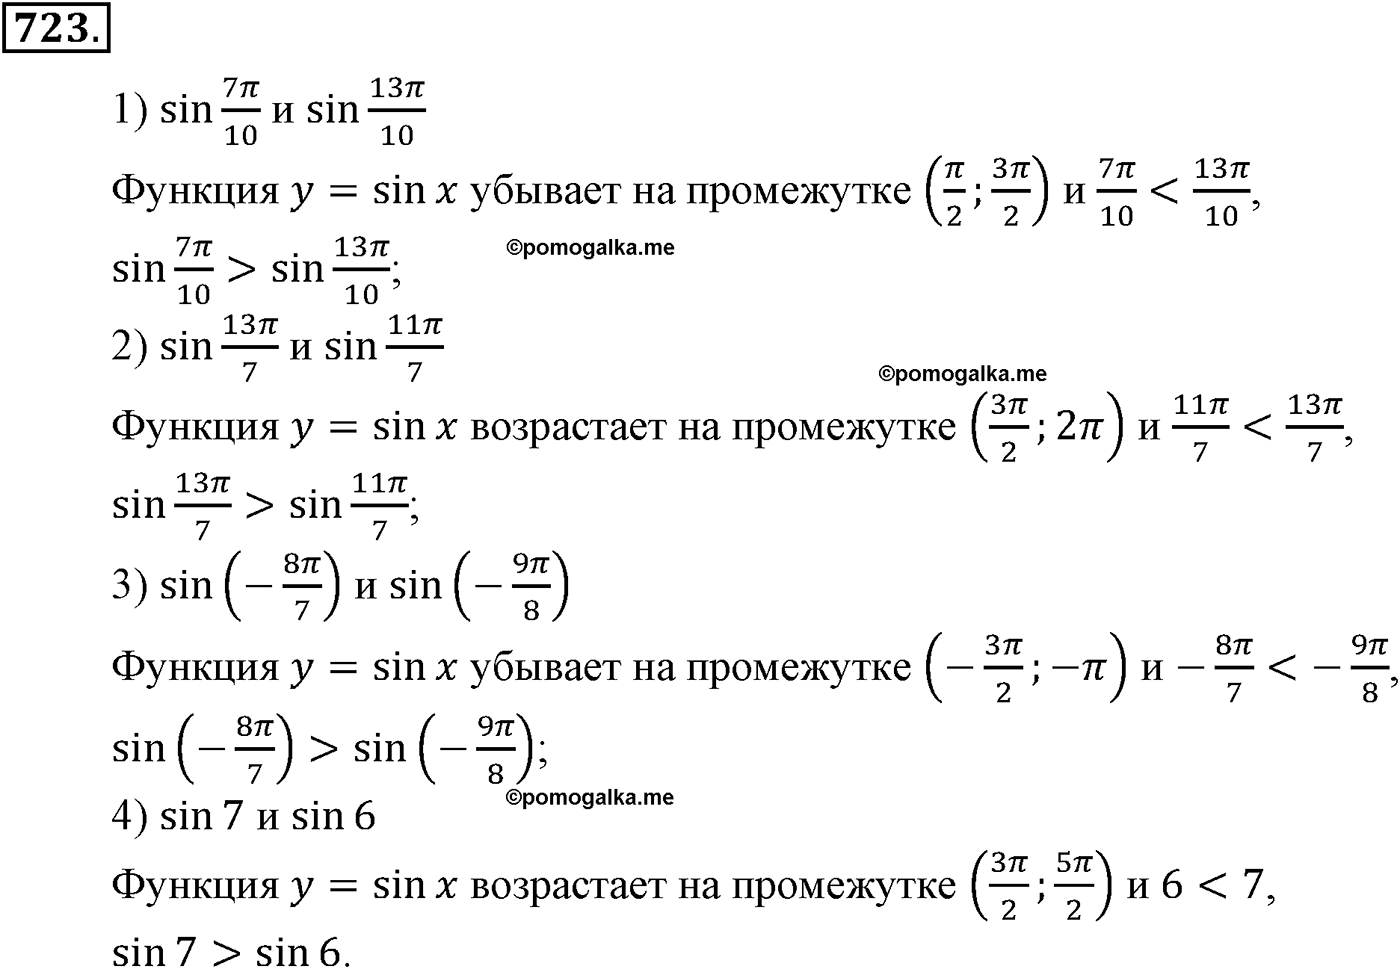 разбор задачи №723 по алгебре за 10-11 класс из учебника Алимова, Колягина